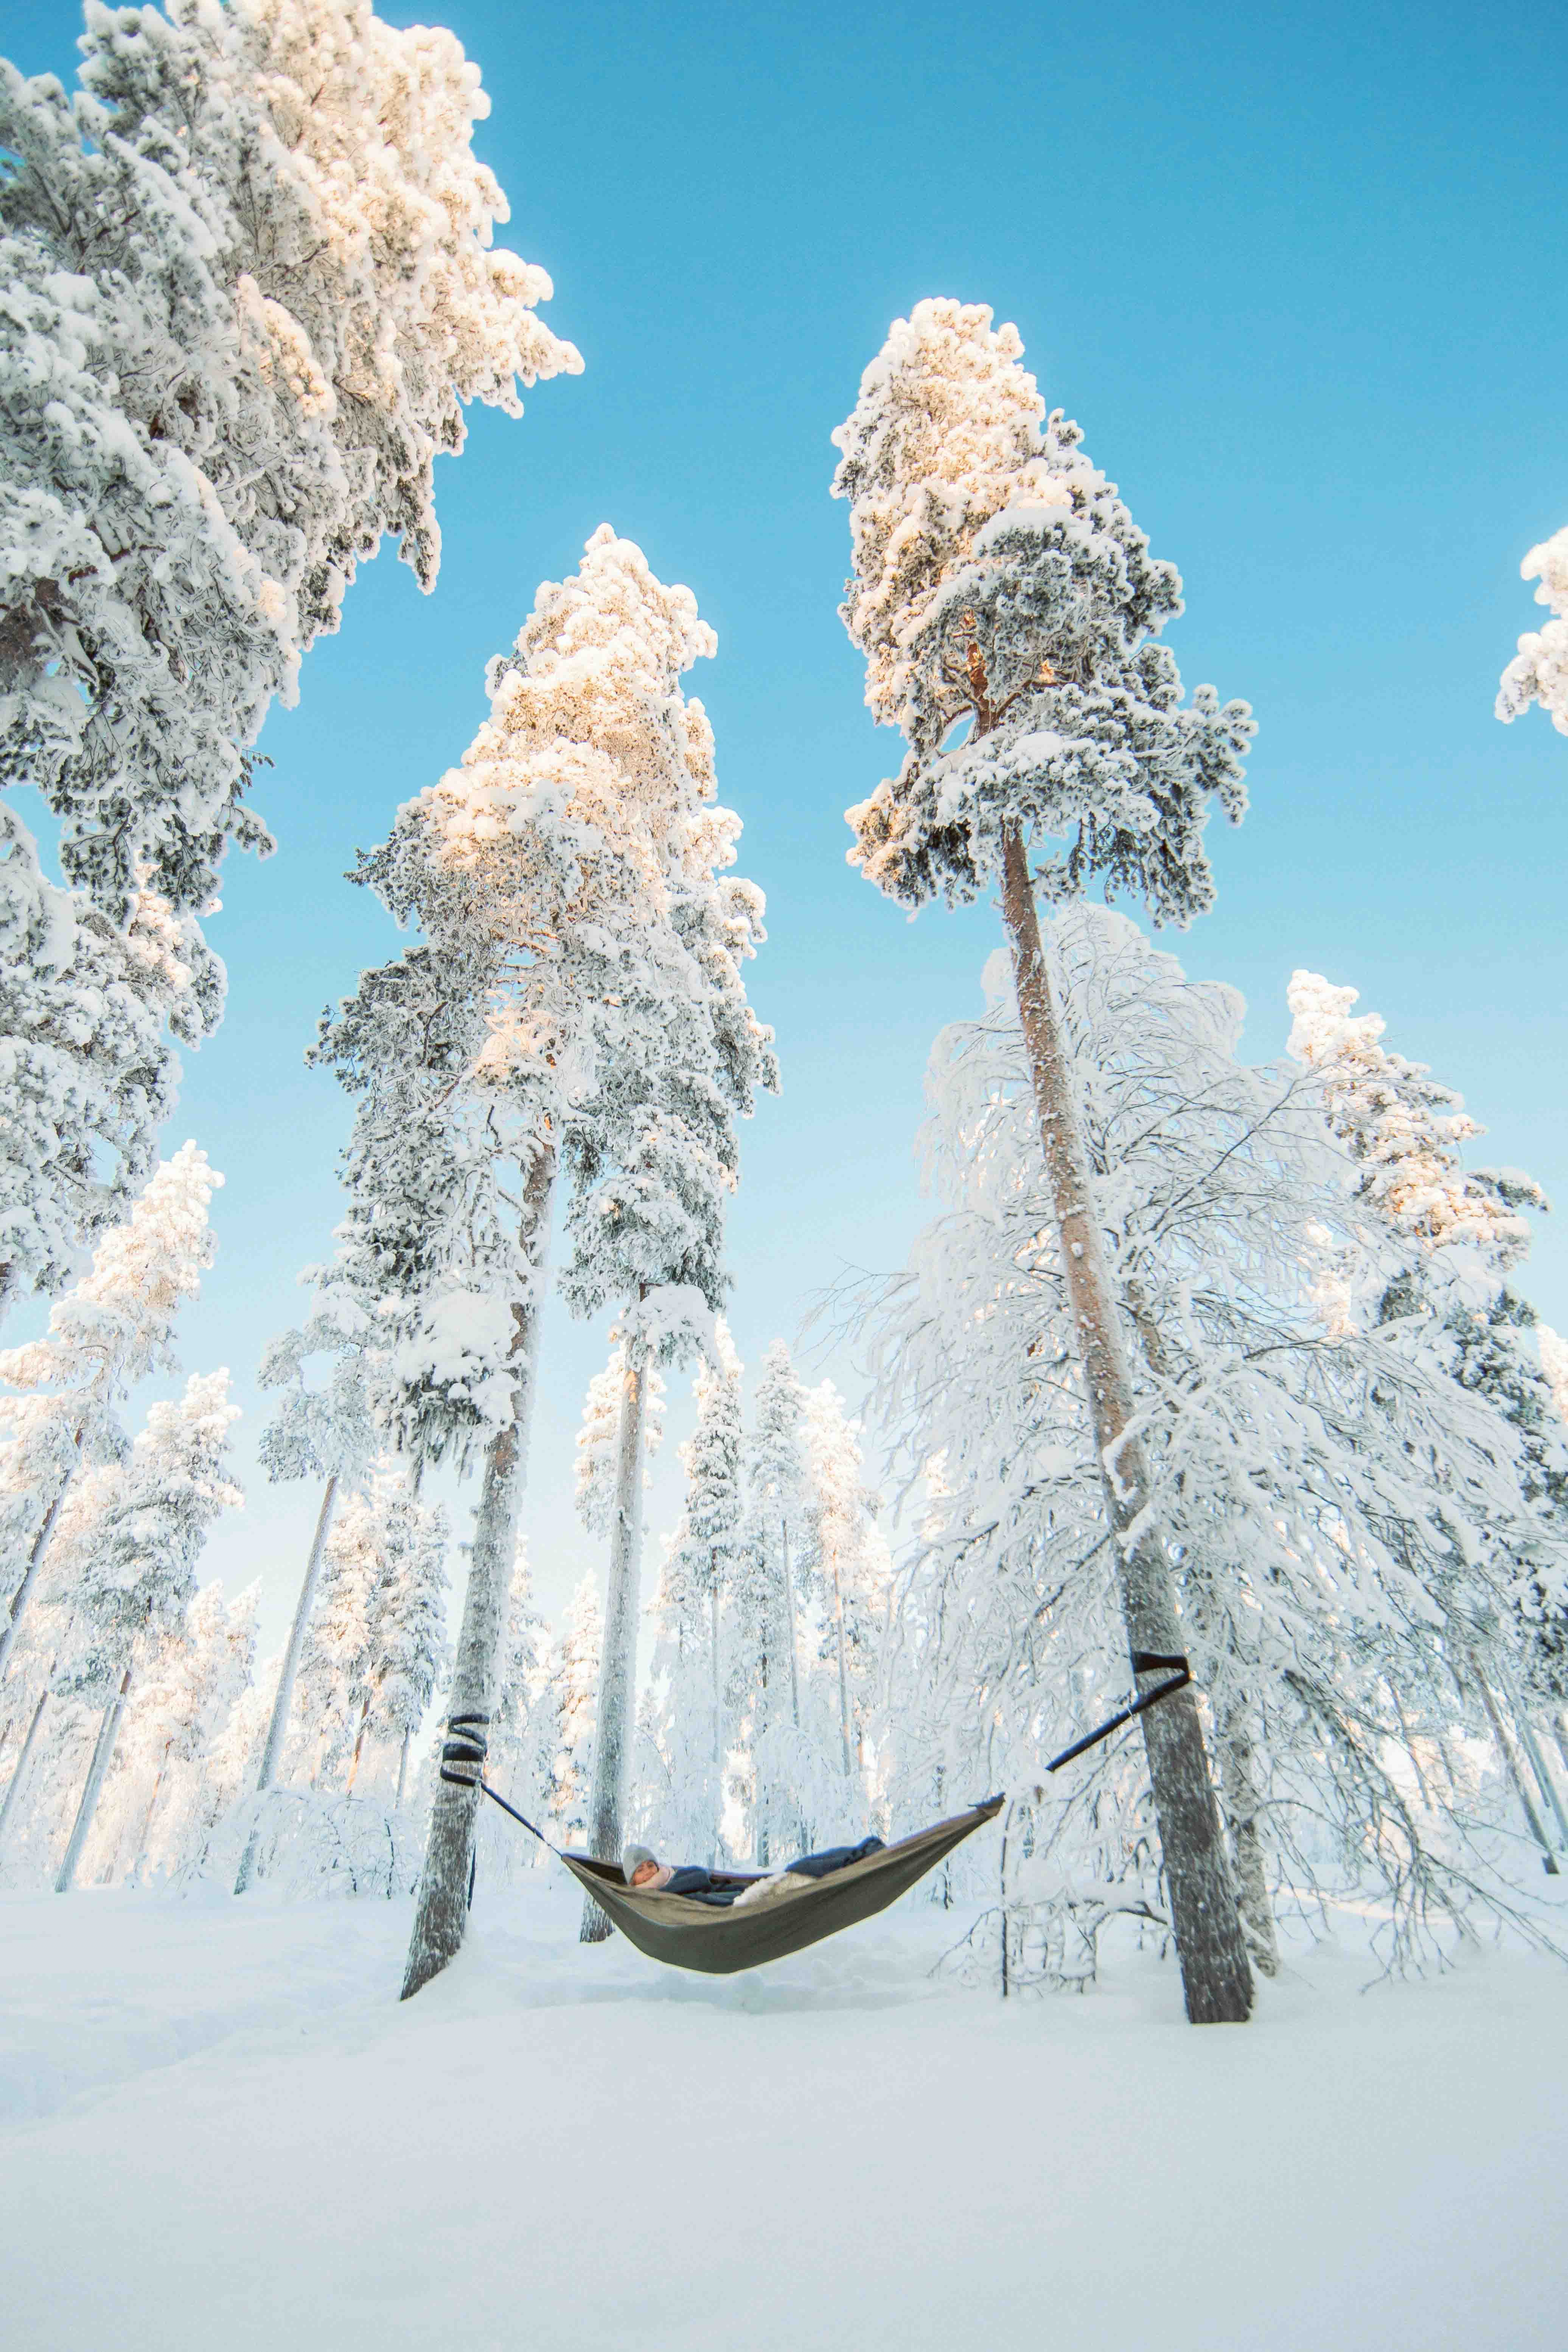 Persona en una hamaca entre dos árboles nevados sobre un suelo cubierto de nieve